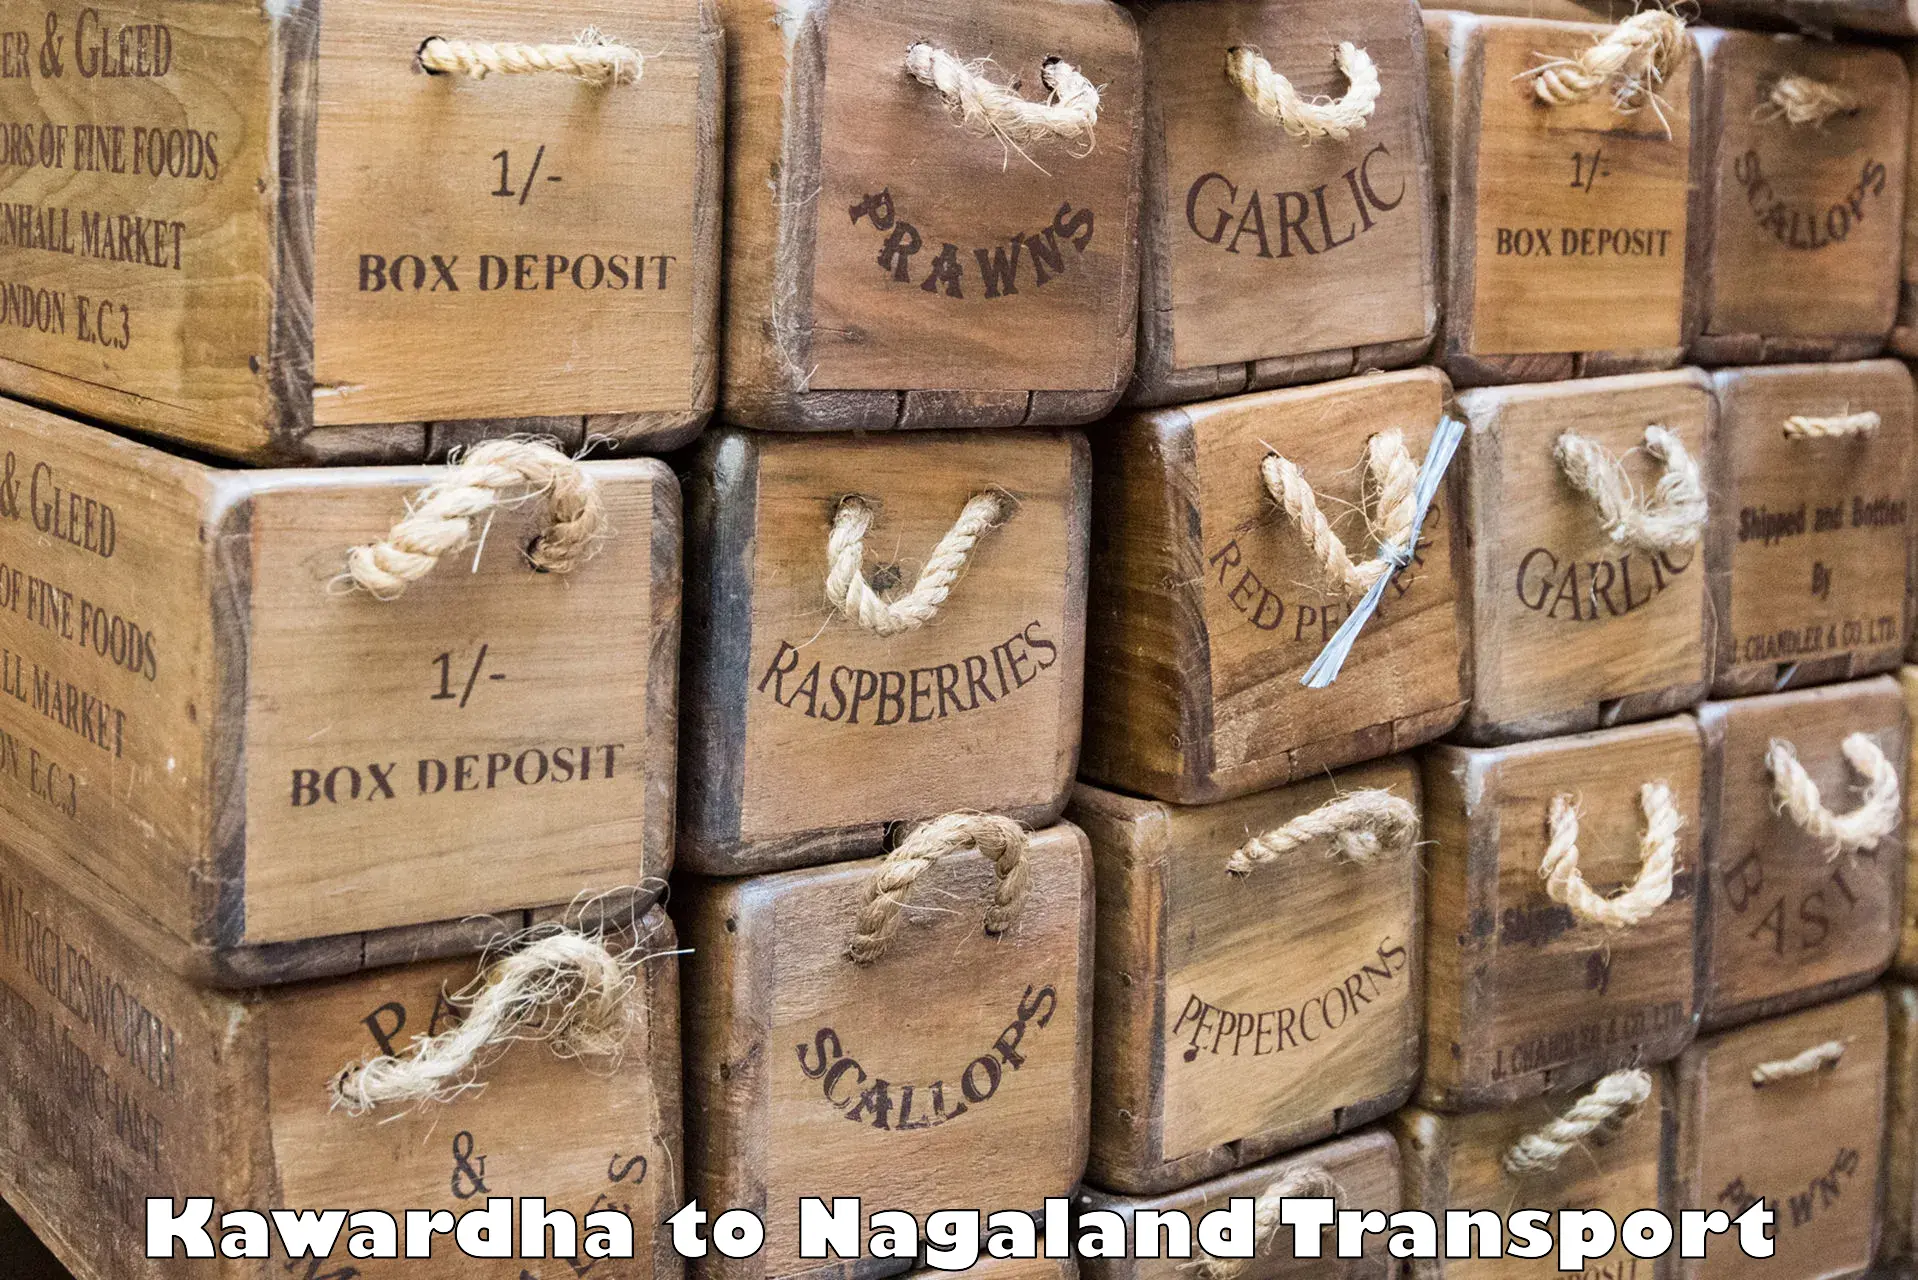 Shipping partner Kawardha to Nagaland